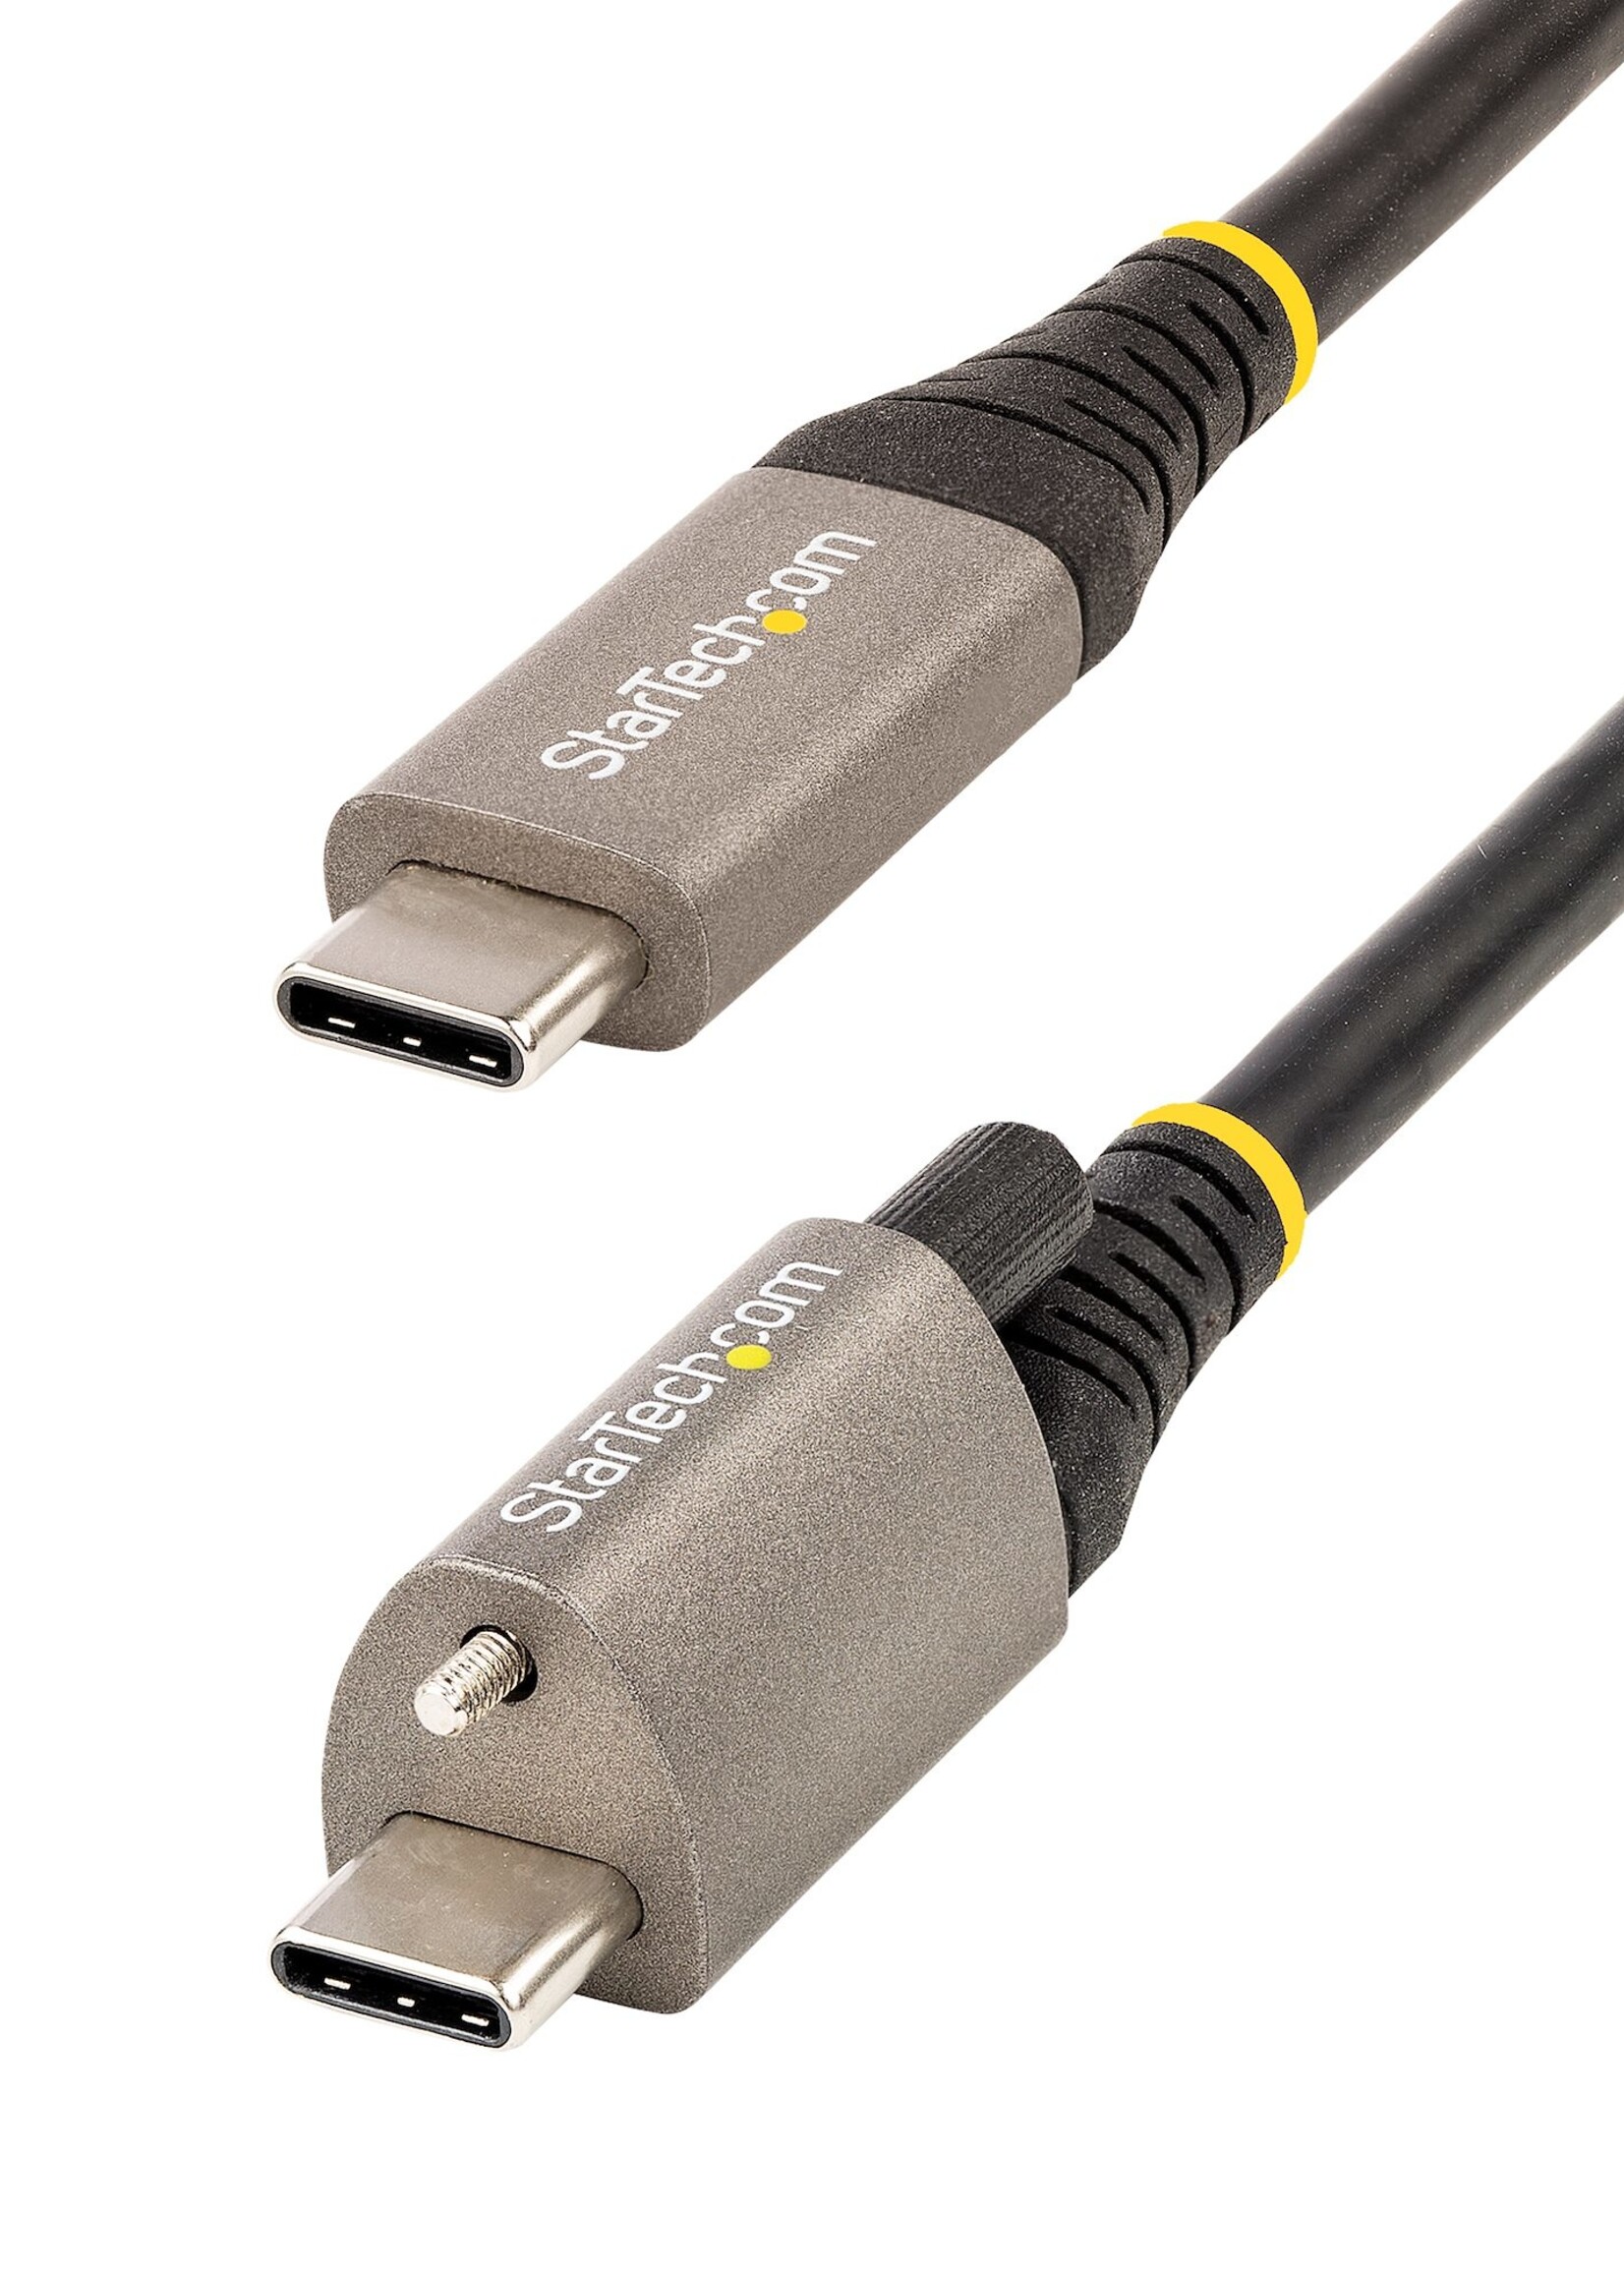 50cm Top Screw Locking USB C Cable